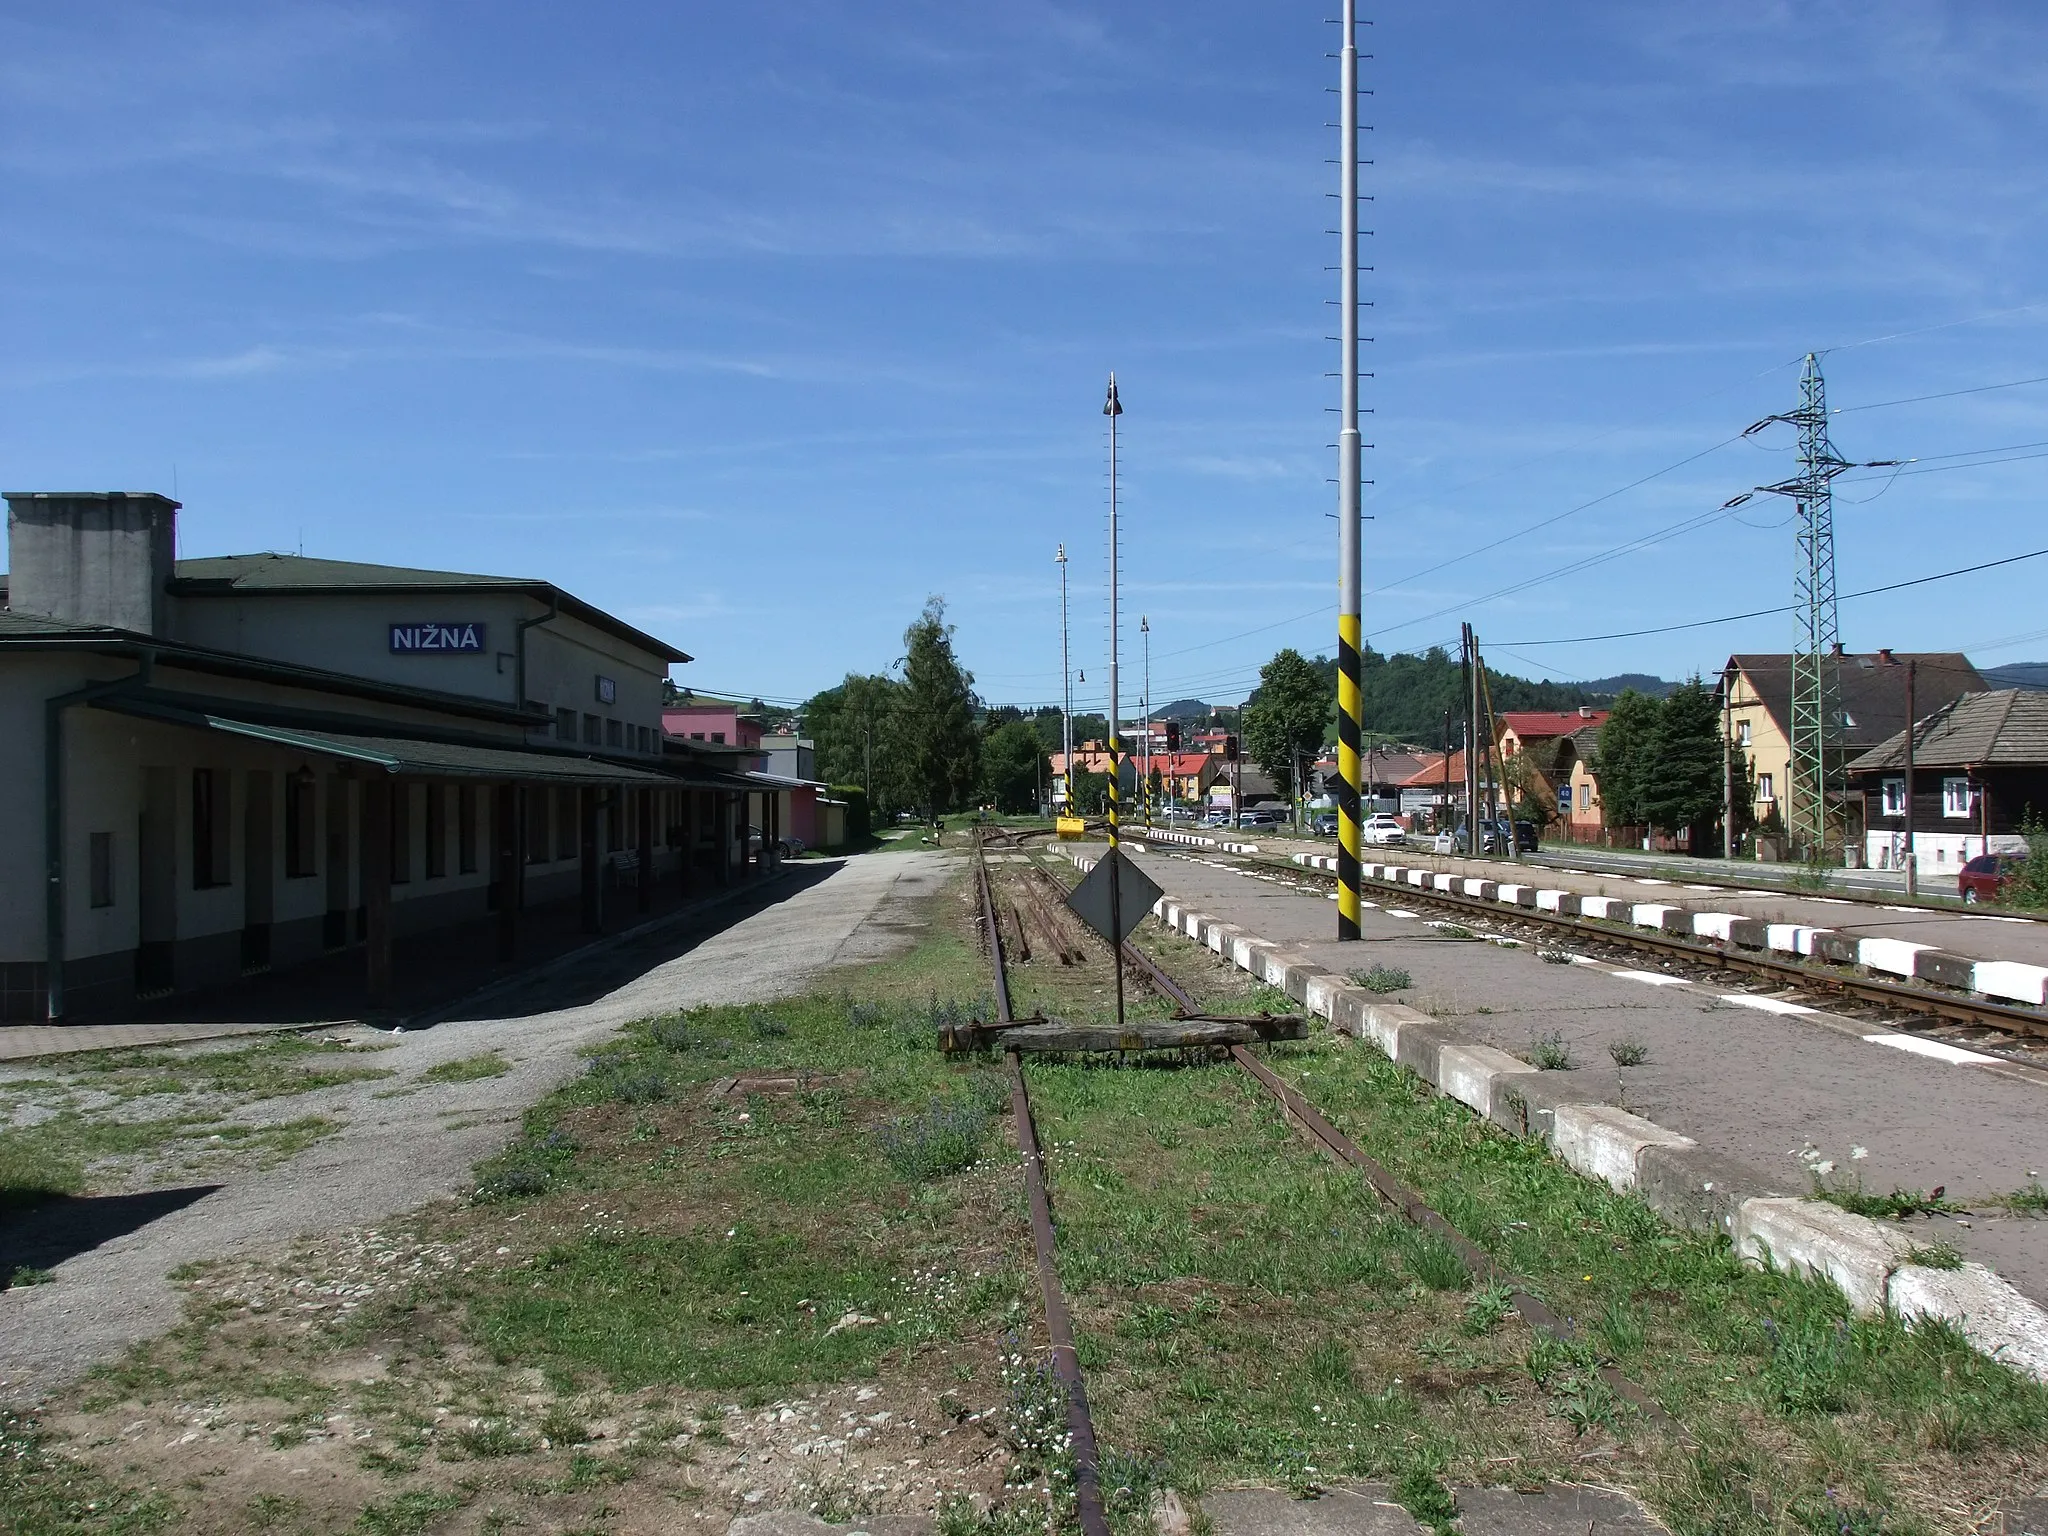 Photo showing: Nižná train station, Orava, Slovakia. Kraľovany – Trstená railway line.